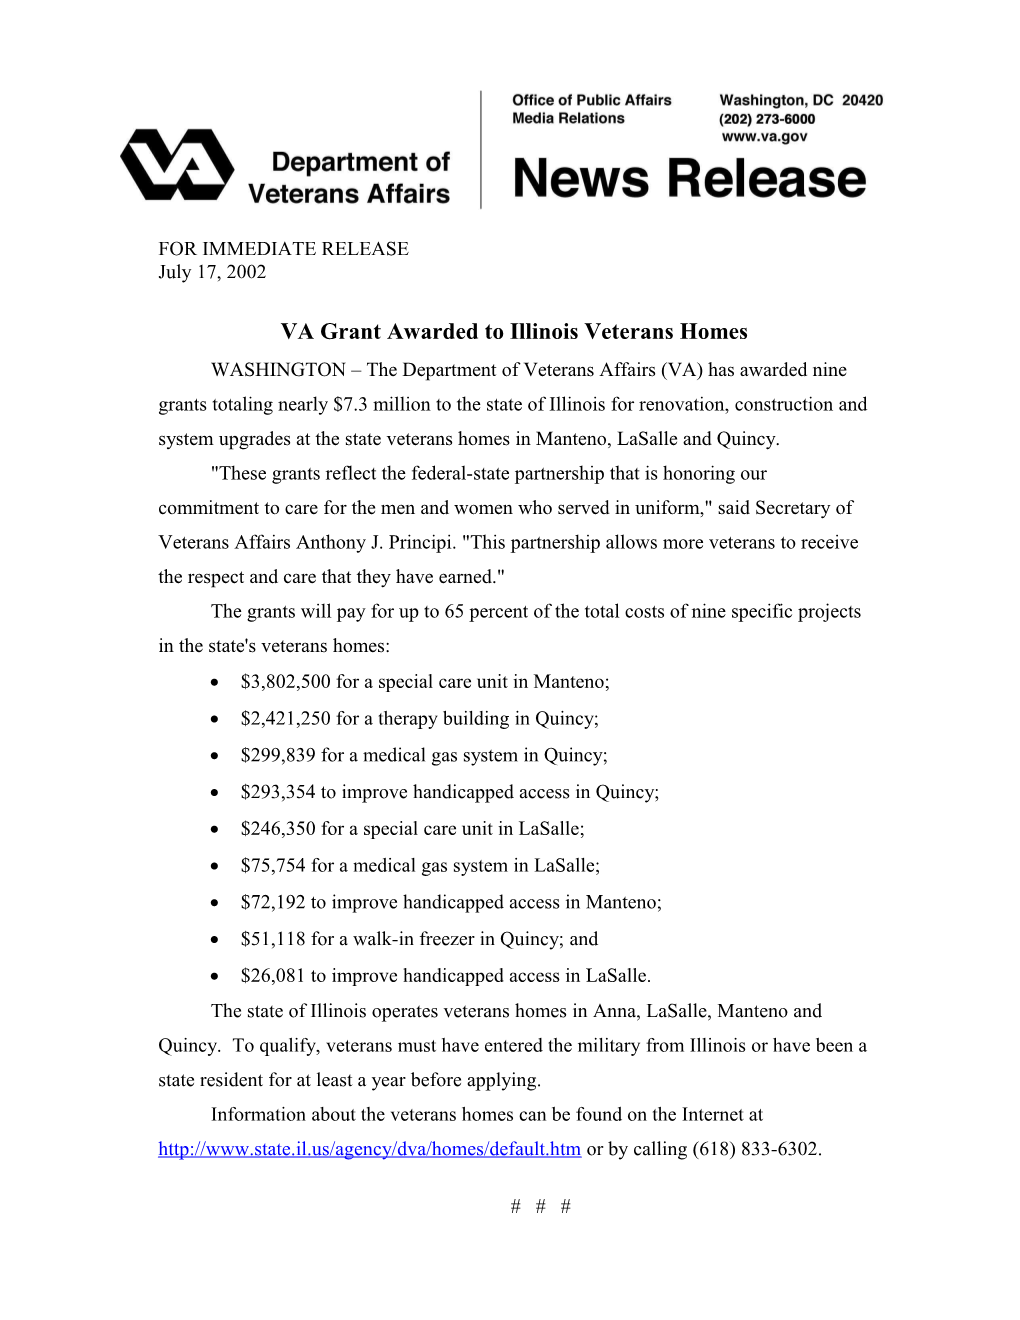 VA Grant Awarded to Illinois Veterans Homes